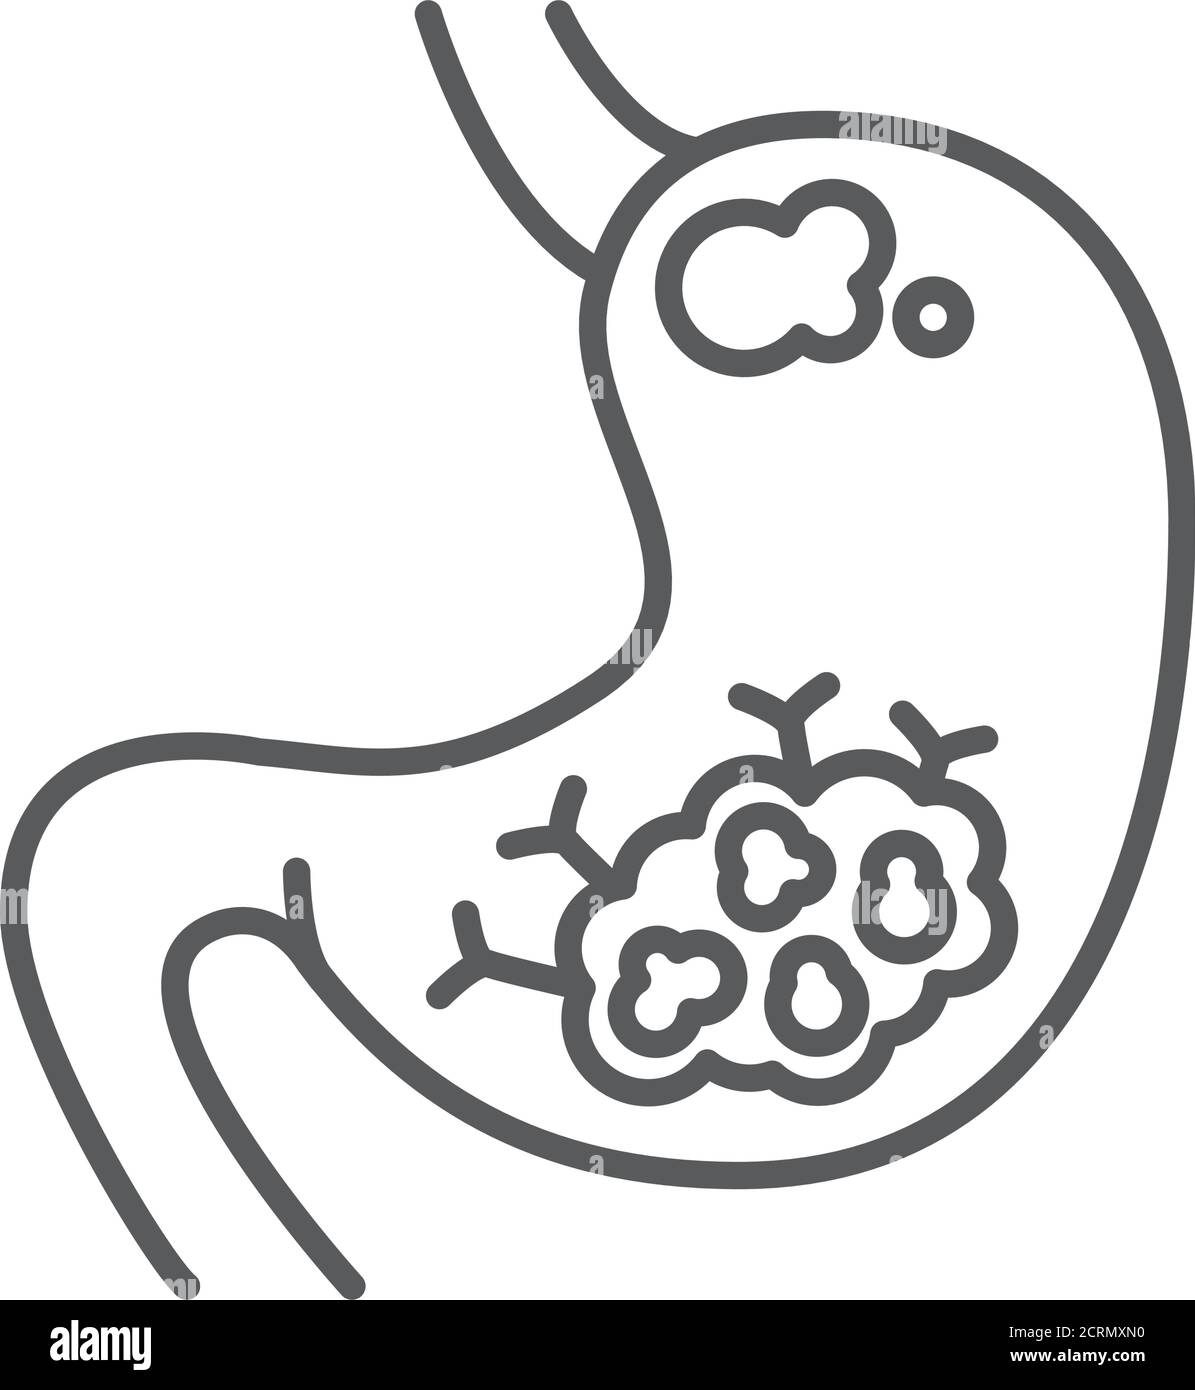 Icona nera della linea del cancro dello stomaco. Concetto di organo umano. Neoplasia maligna. Illustrazione Vettoriale